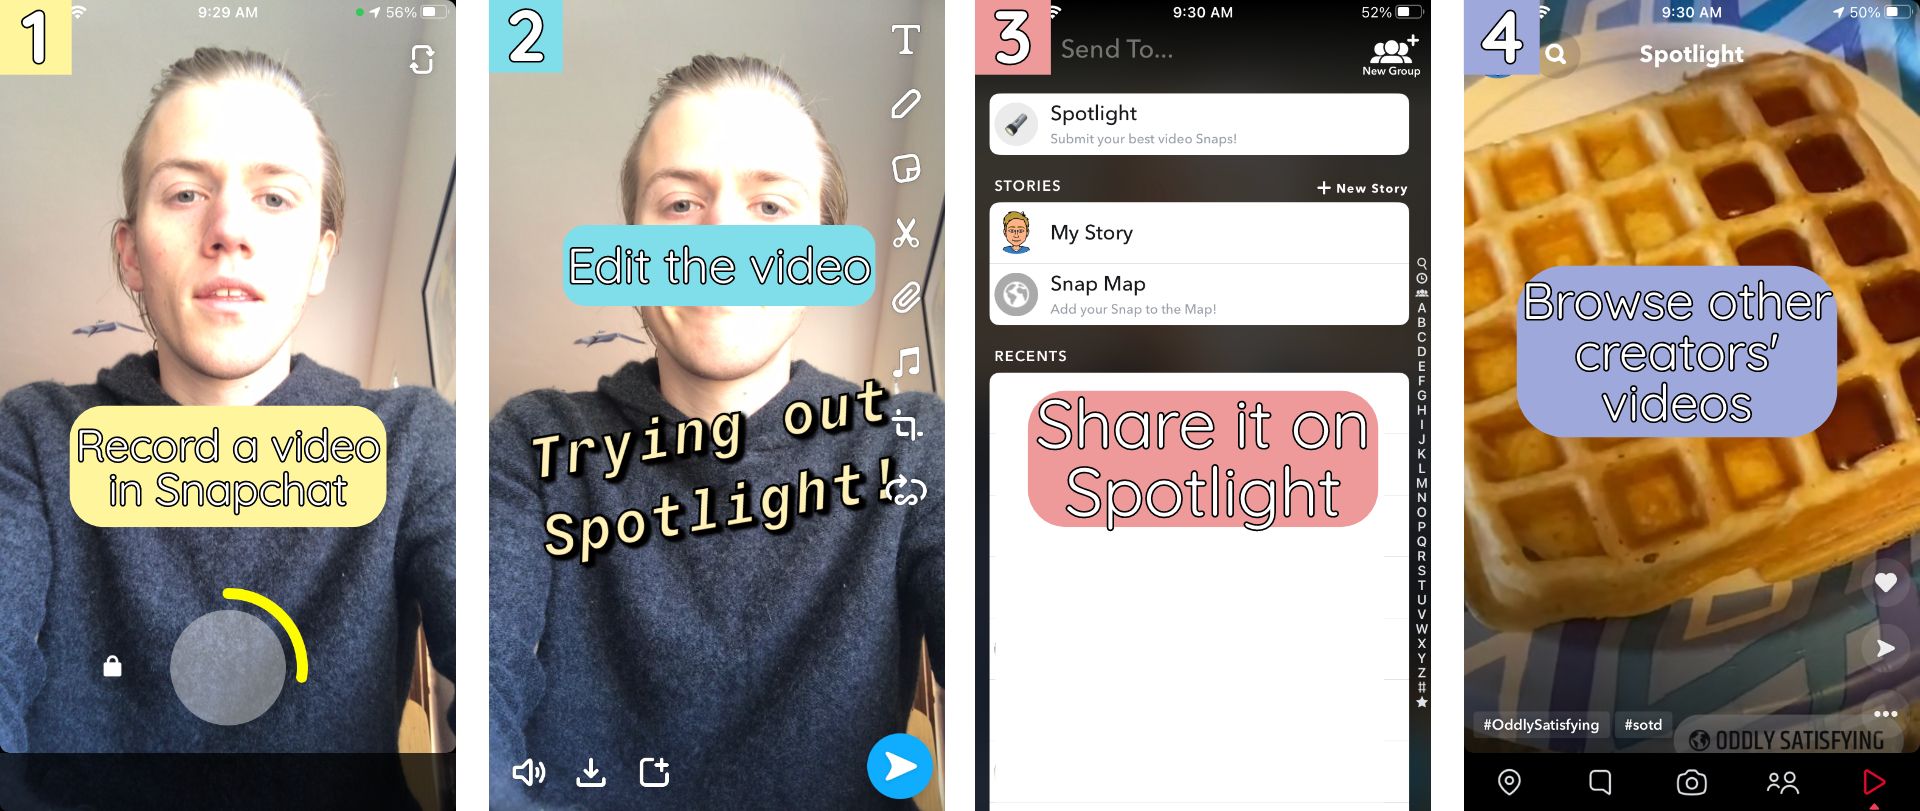 Spotlight on Snapchat